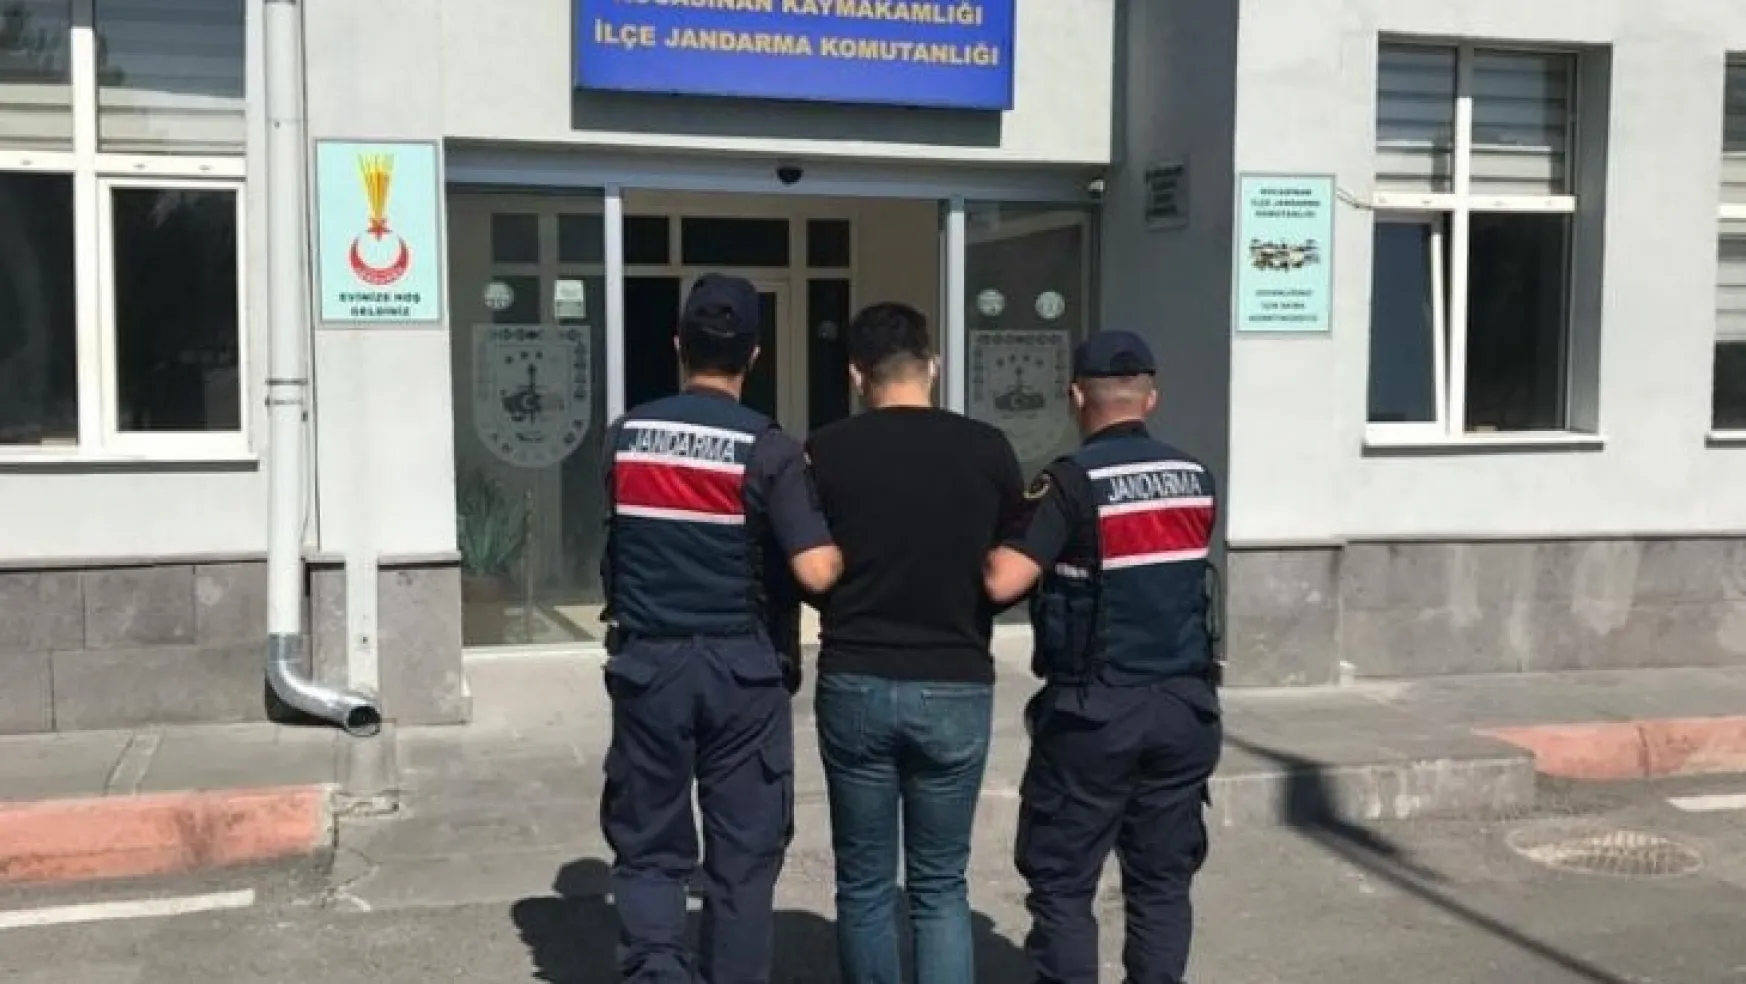 Kesinleşmiş cezası bulunan FETÖ üyesi ihraç polis yakalandı